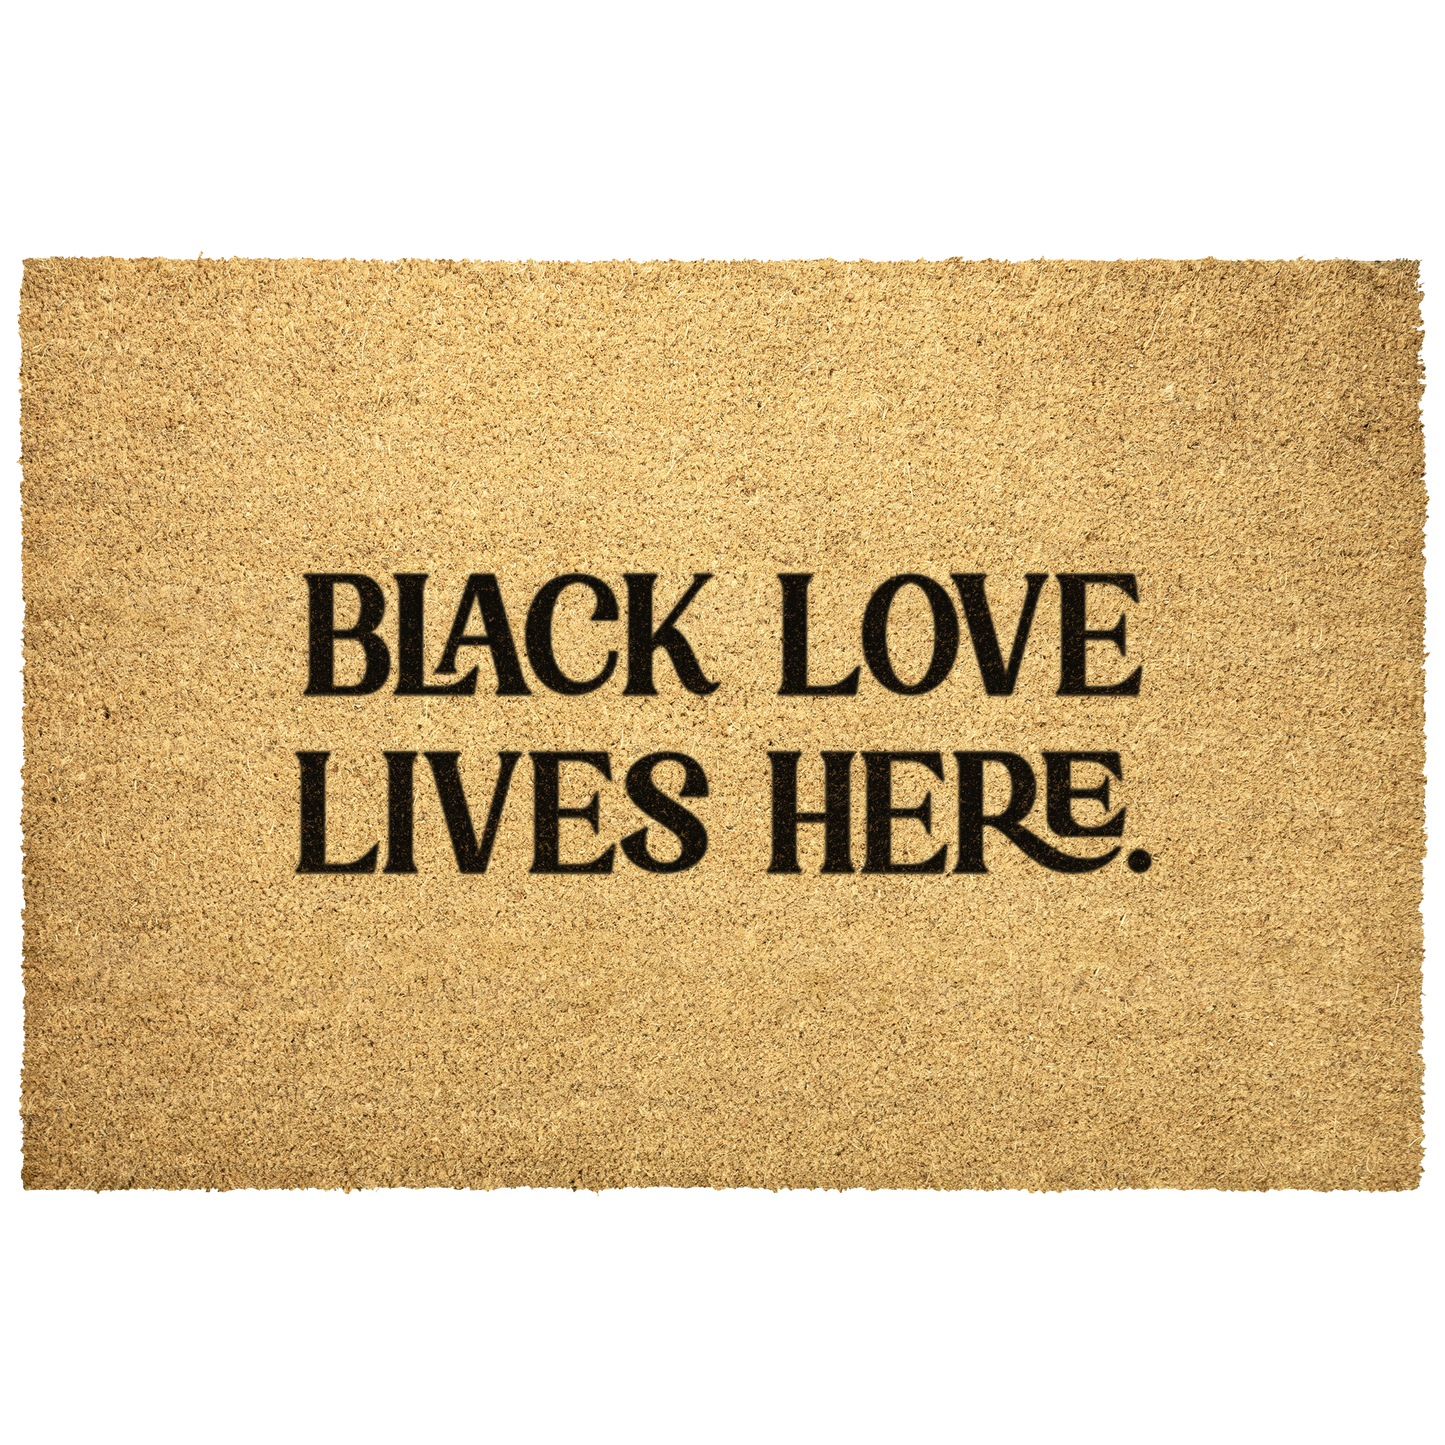 Black Love Lives Here Doormat